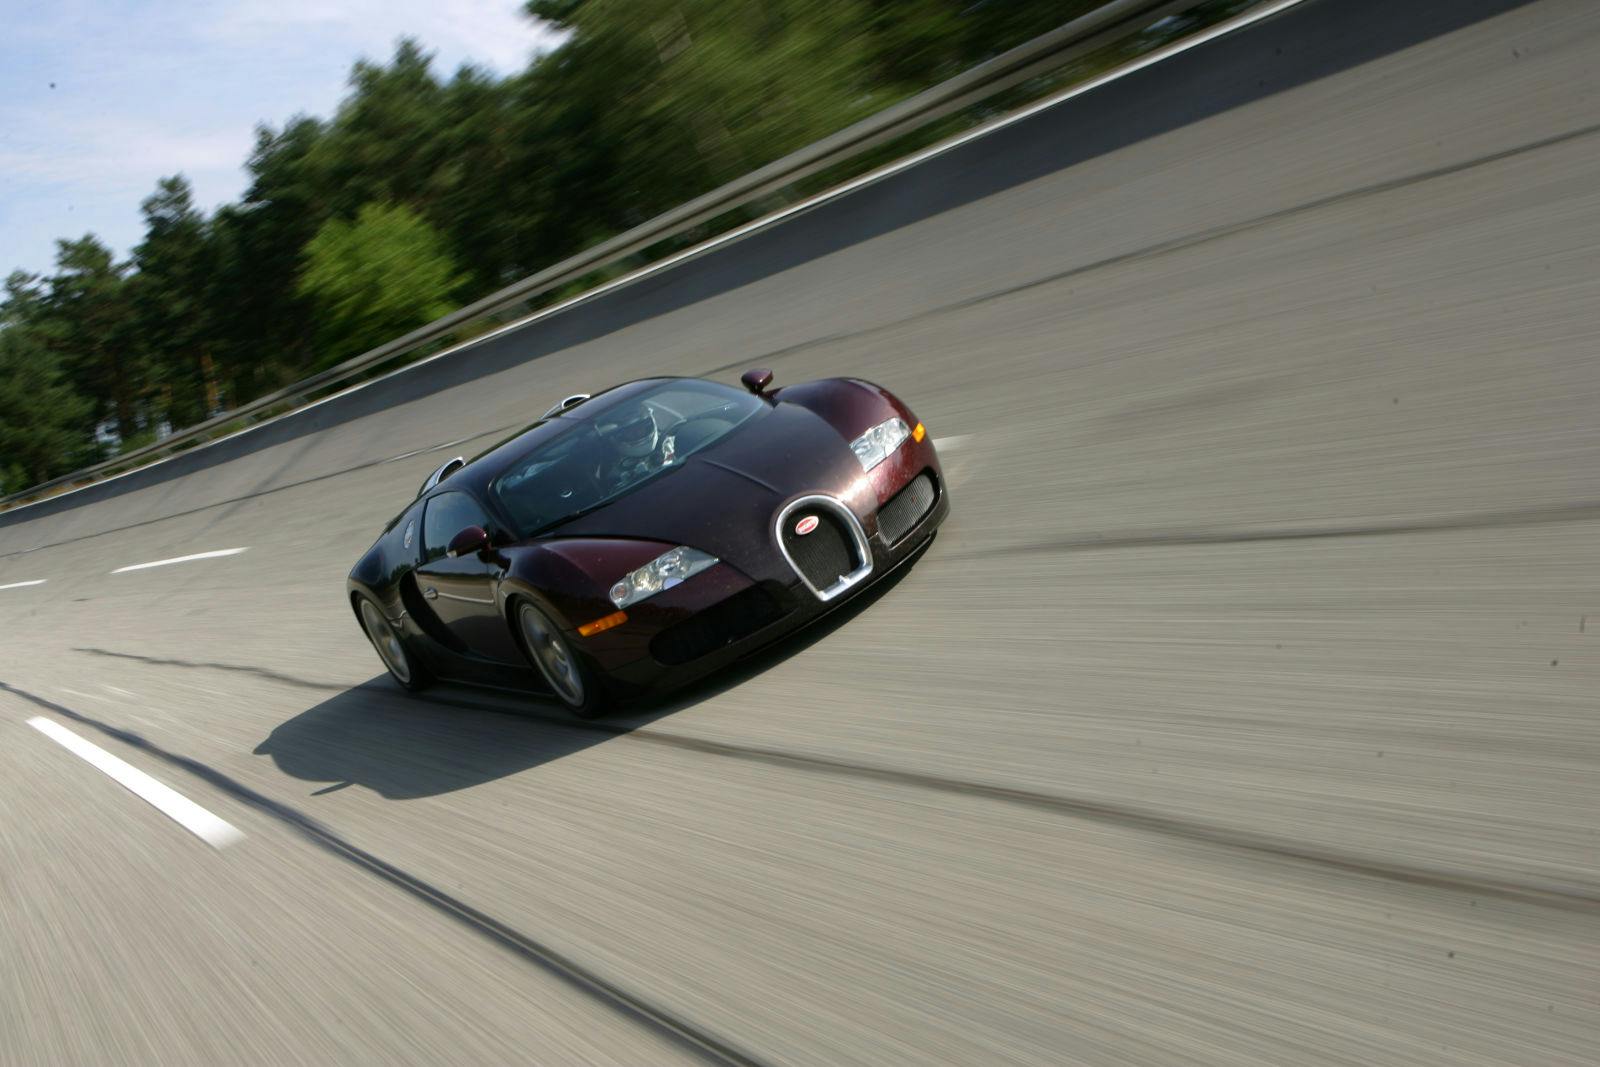 Vor 15 Jahren schafft der Bugatti Veyron 16.4 das Unmögliche: Als erstes Serienfahrzeug überhaupt durchbricht er die 400 km/h-Grenze.